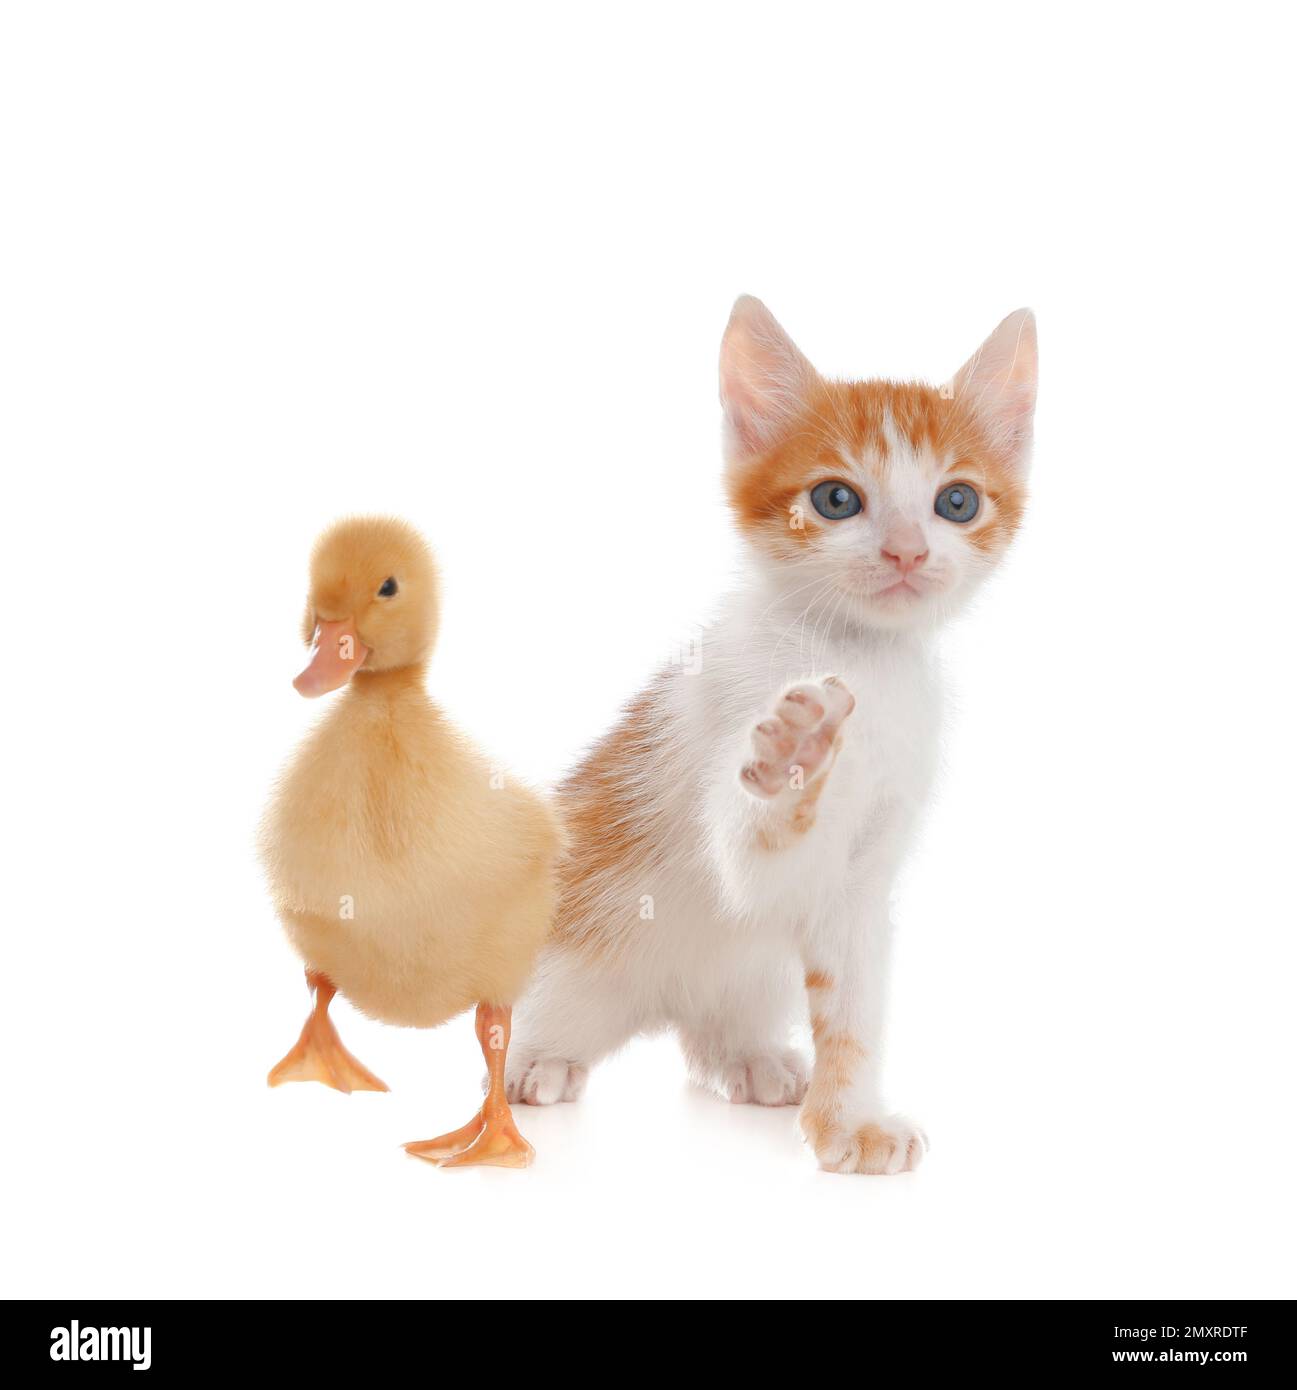 Flauschiges Baby-Entlein und süßes Kätzchen zusammen auf weißem Hintergrund Stockfoto